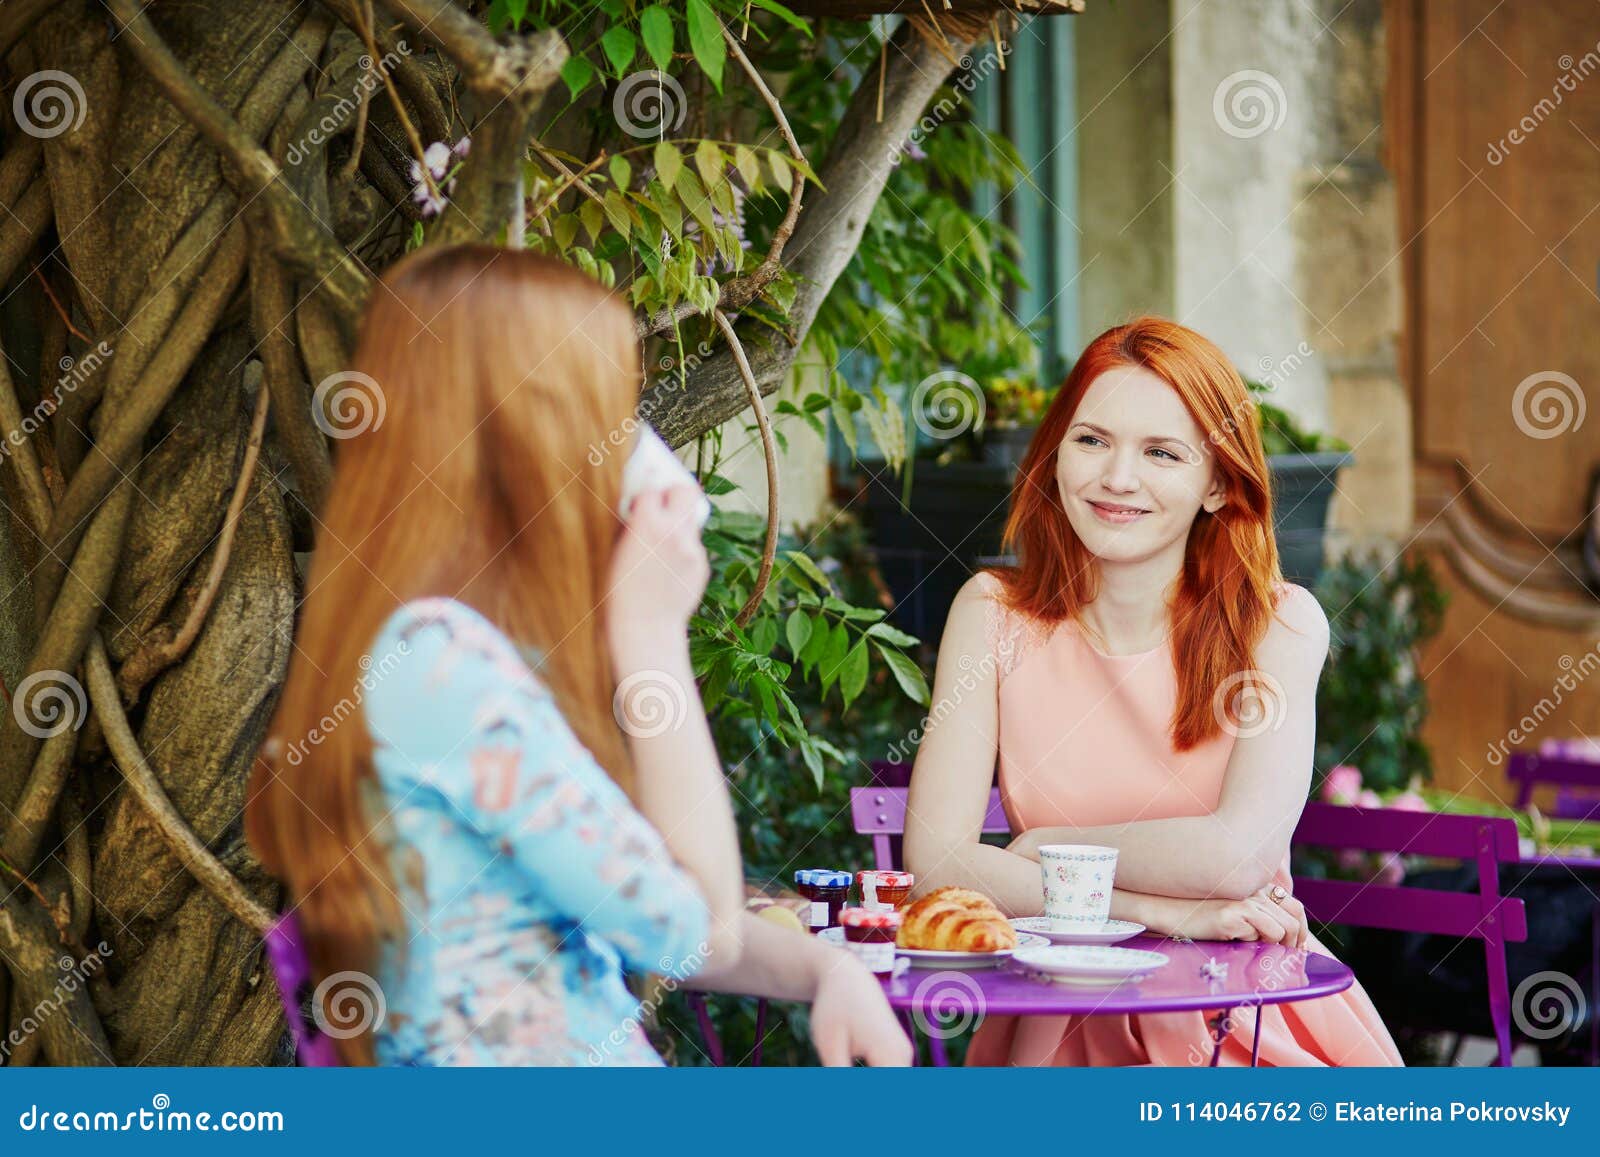 快乐的女人一起喝咖啡聊天 库存图片. 图片 包括有 偶然, 灰色, 休闲, 冷颤, 朋友, 集合, 户内 - 173216045